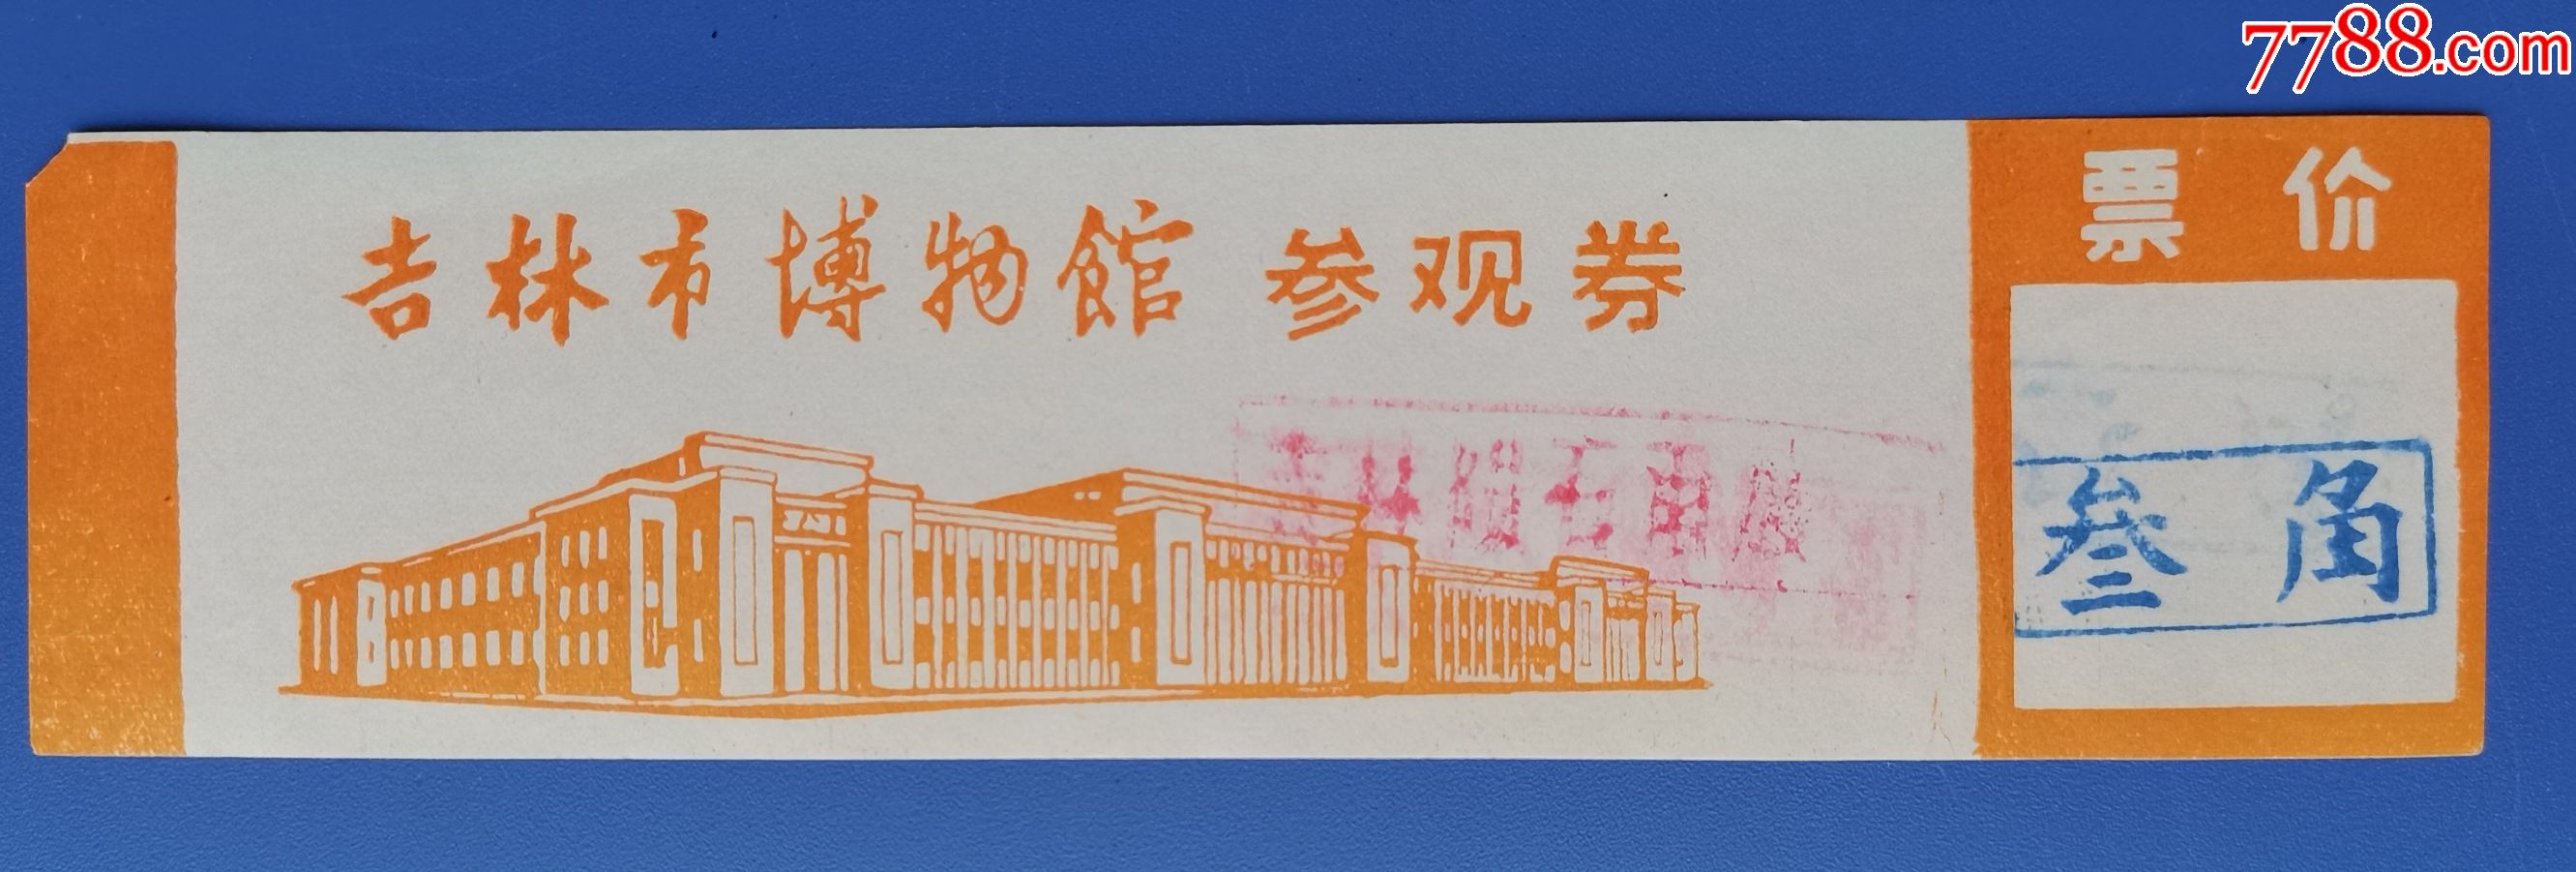 开封市博物馆门票图片